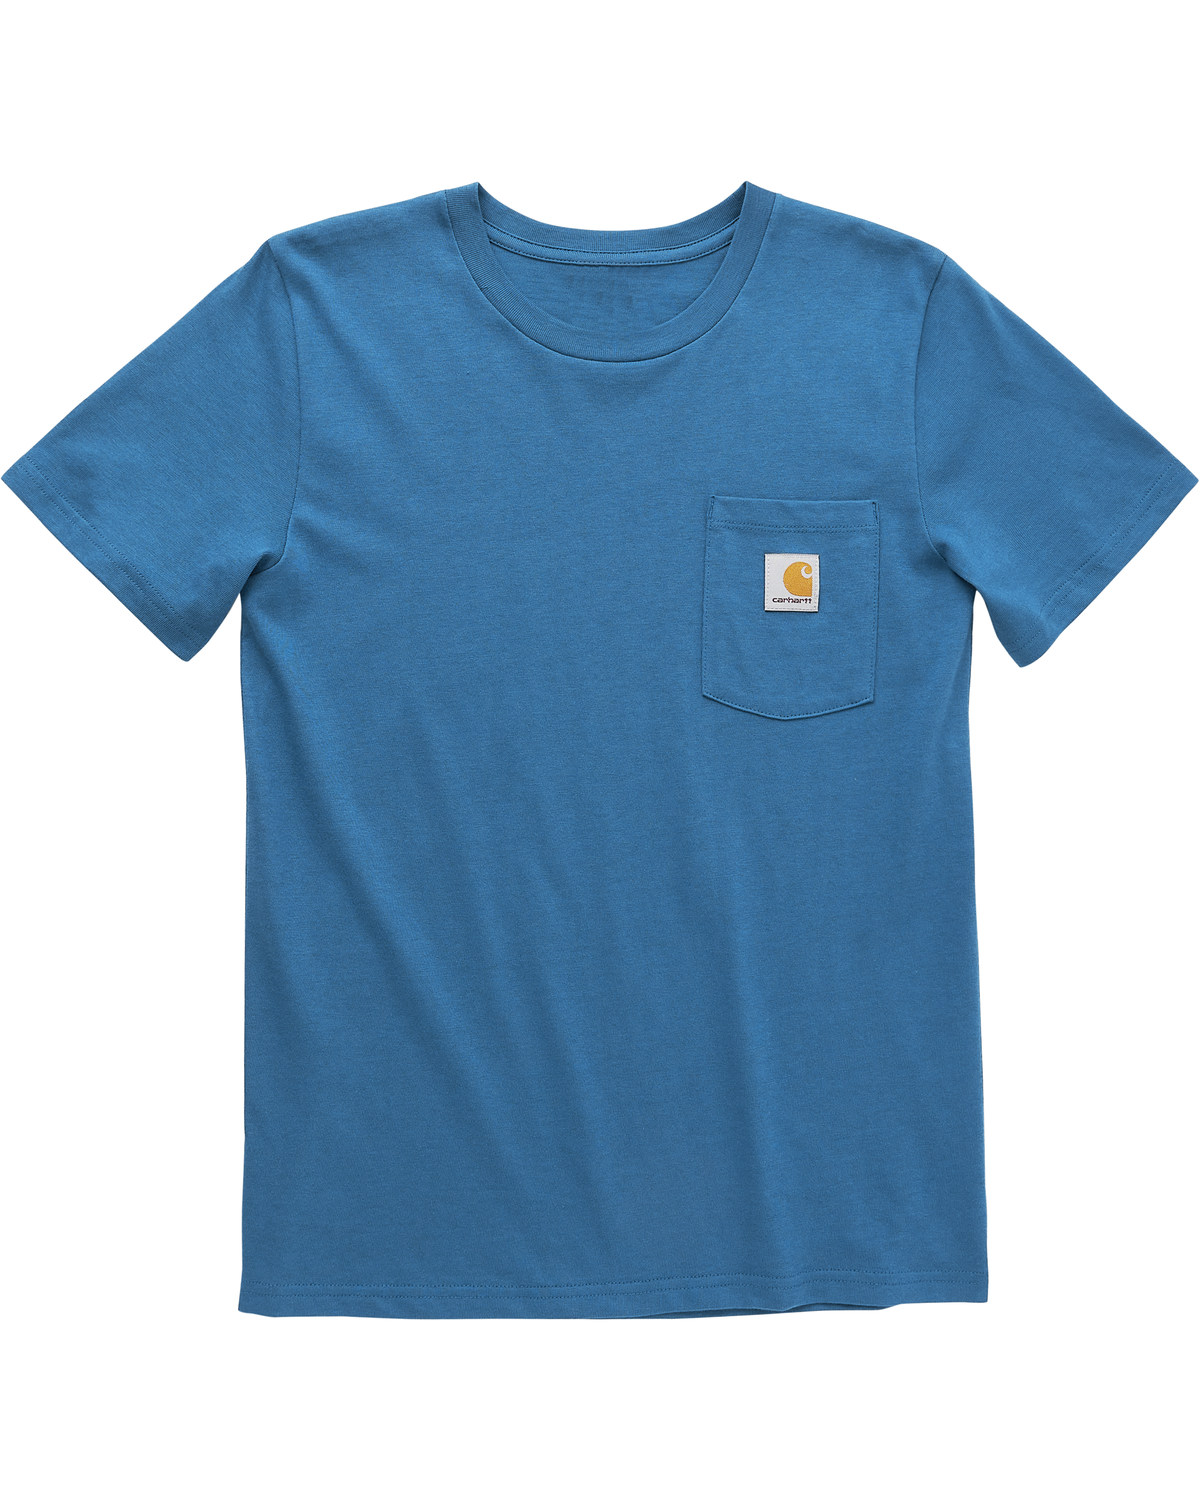 Carhartt Toddler Boys' Short Sleeve Pocket T-Shirt